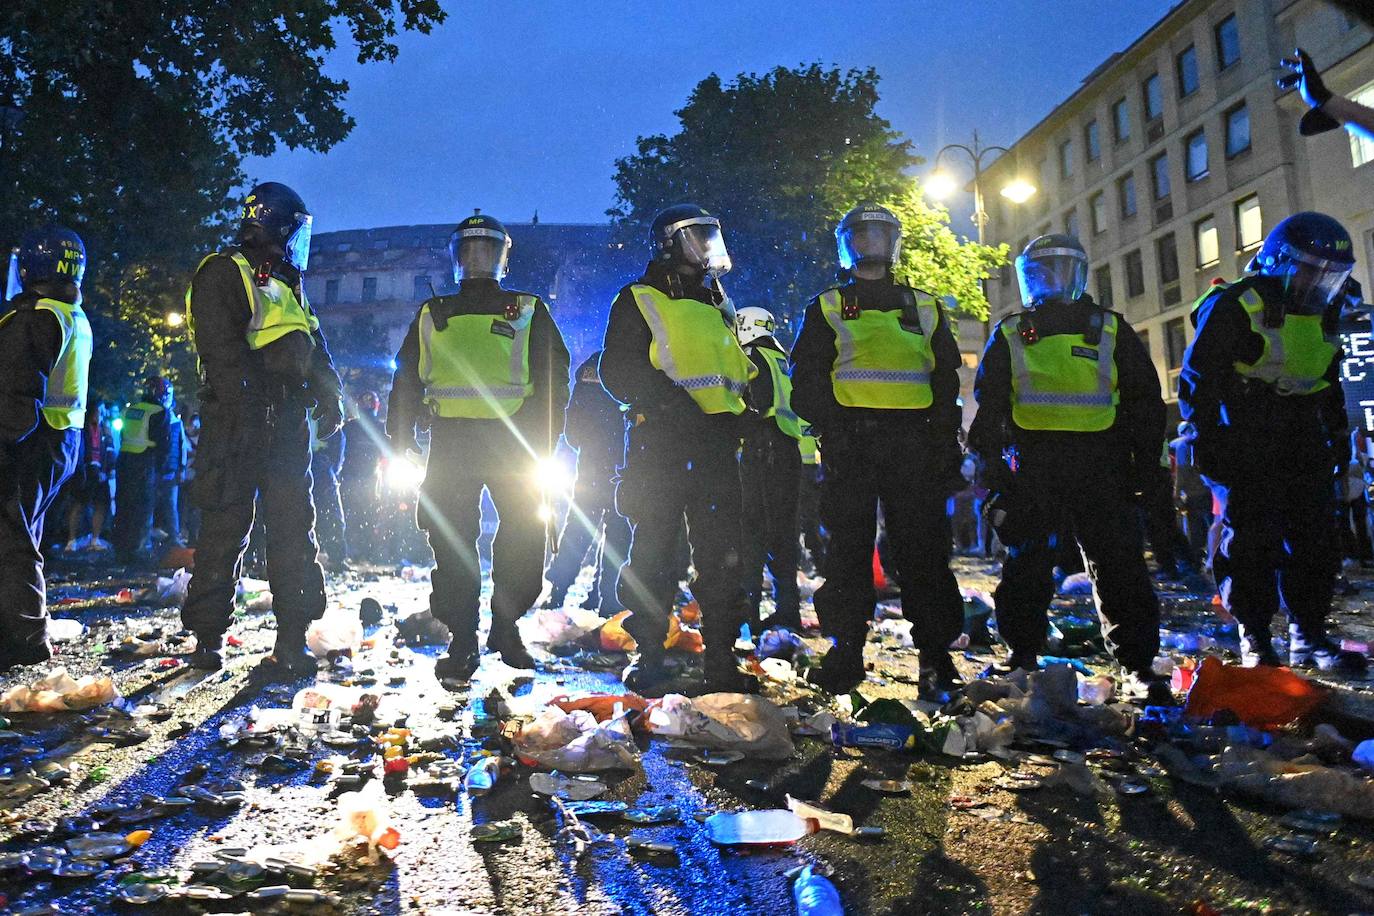 Fotos: Imágenes de los disturbios efectuados por los aficionados ingleses tras la derrota de Inglaterra en la final de la Eurocopa